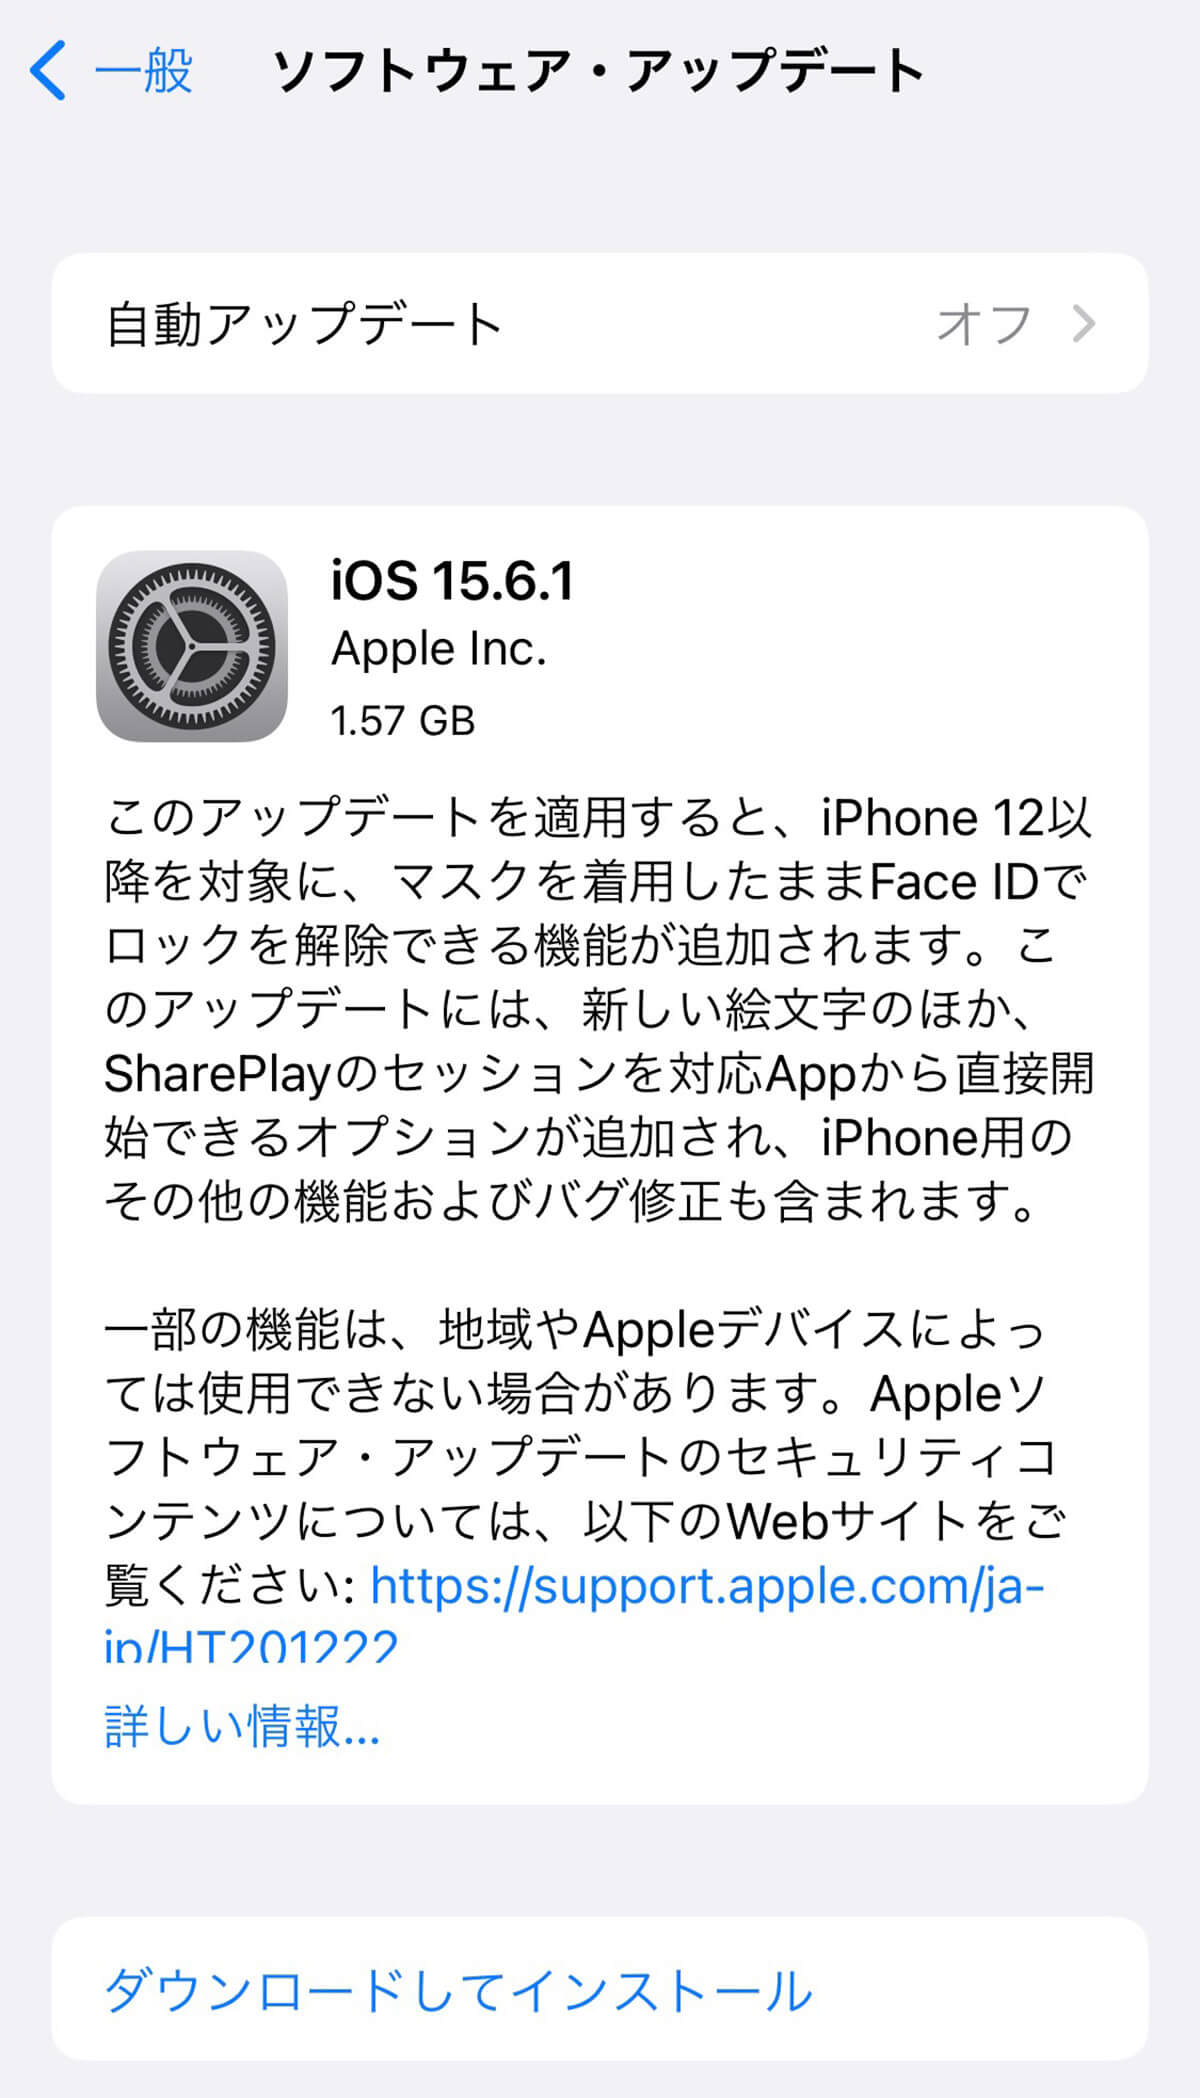 iOSアップデートを見送っていた人は「iOS 15.6.1」にアップデートしよう